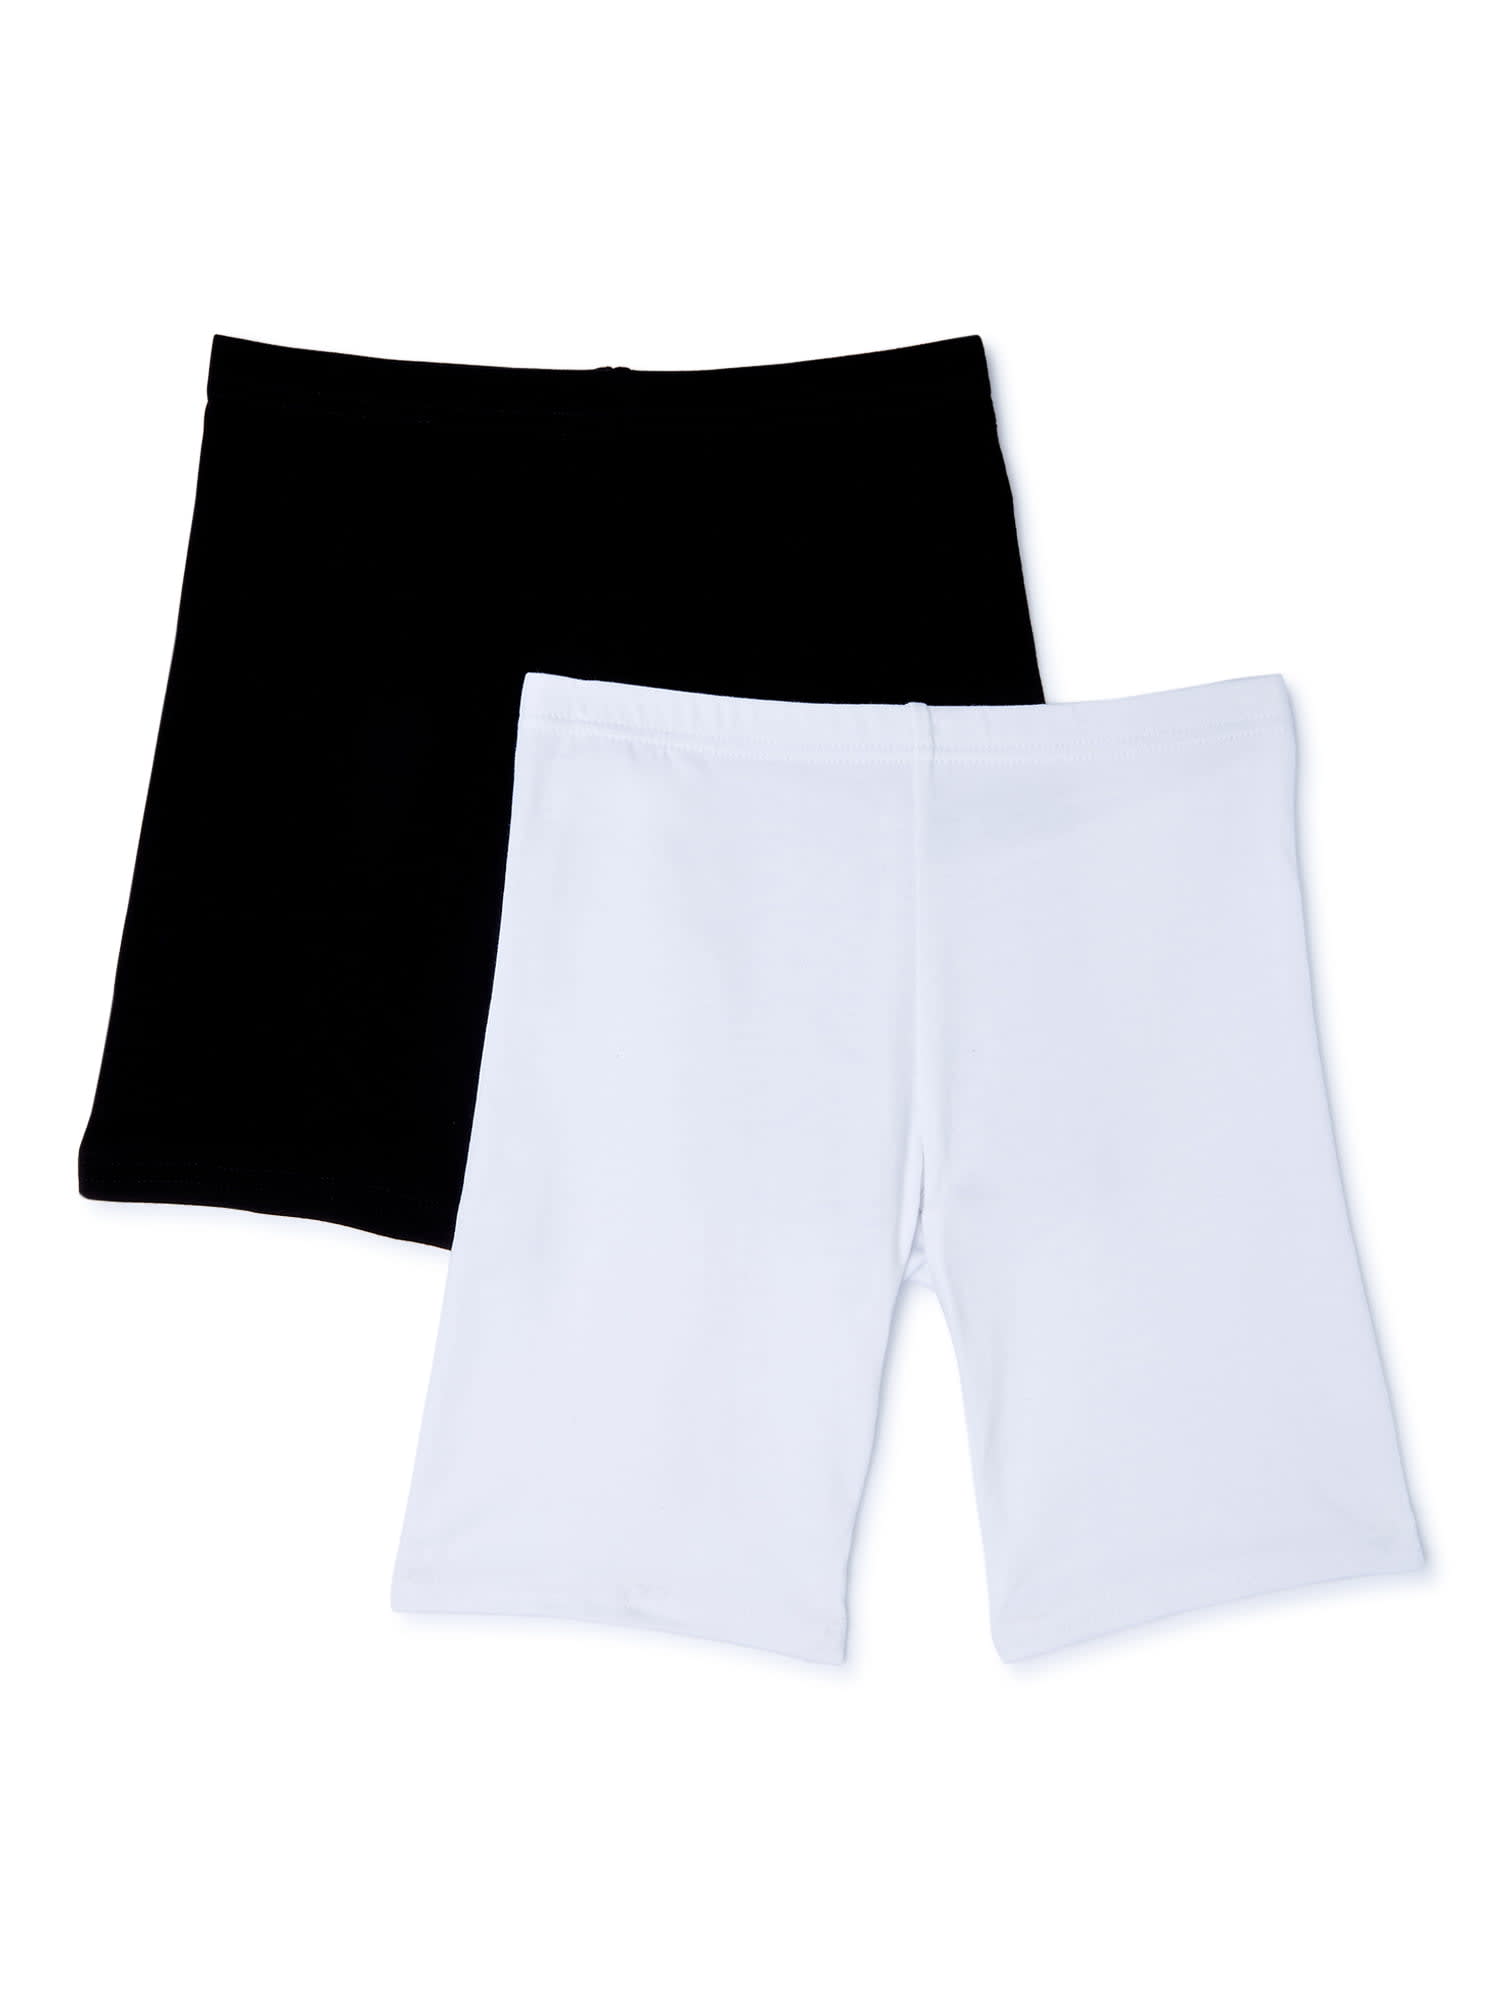 Athletic Works Girls' Active Boyshorts Underwear, 5 Pack, Sizes 4